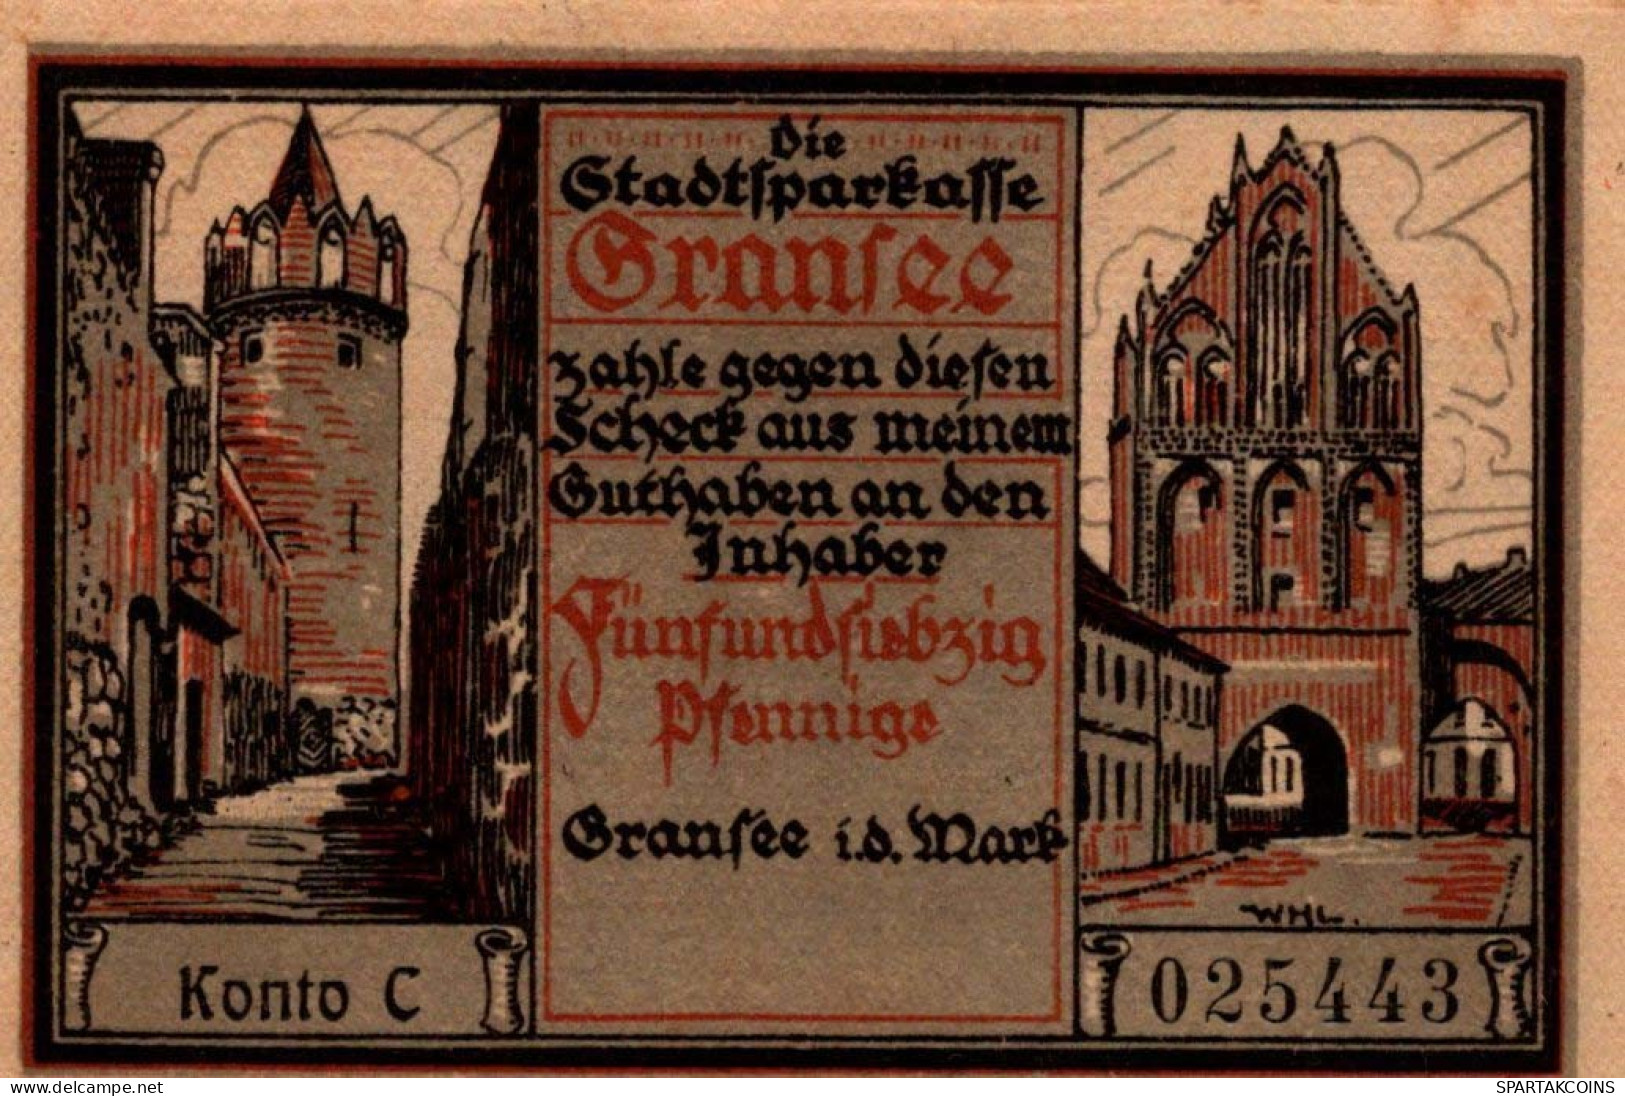 75 PFENNIG 1921 Stadt GRANSEE Brandenburg UNC DEUTSCHLAND Notgeld #PD013 - Lokale Ausgaben